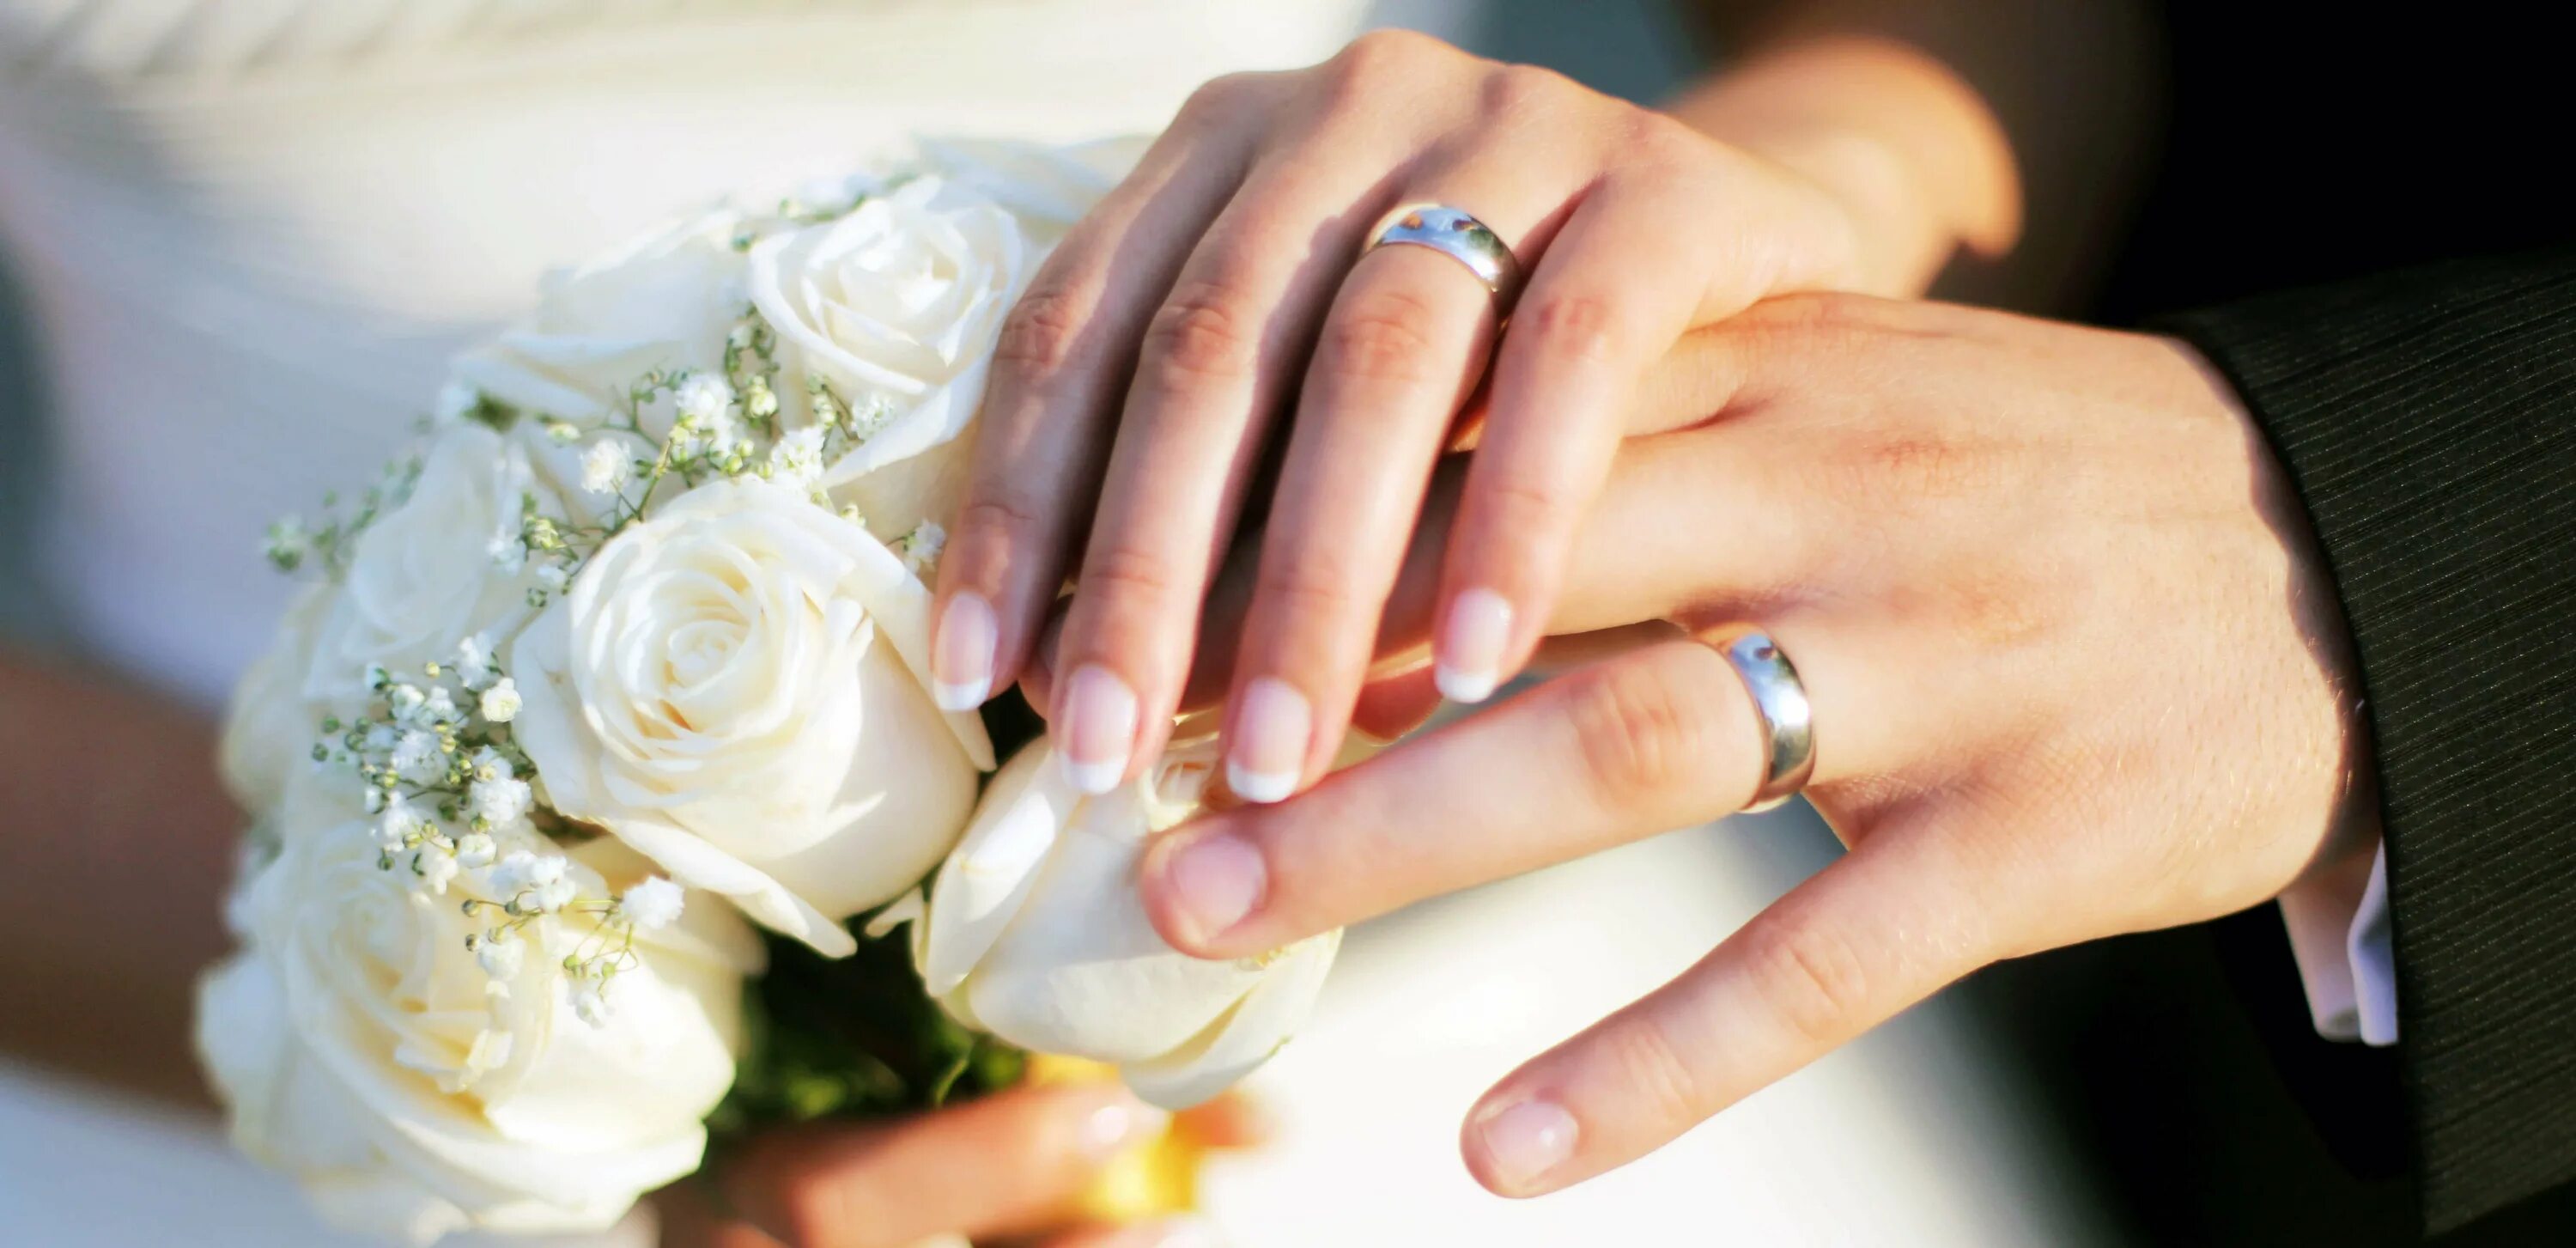 Удачное замужество. Свадебный букет и кольца. Кольца на свадьбу обручальные. Свадебные кольца на руках. Свадебные фото.